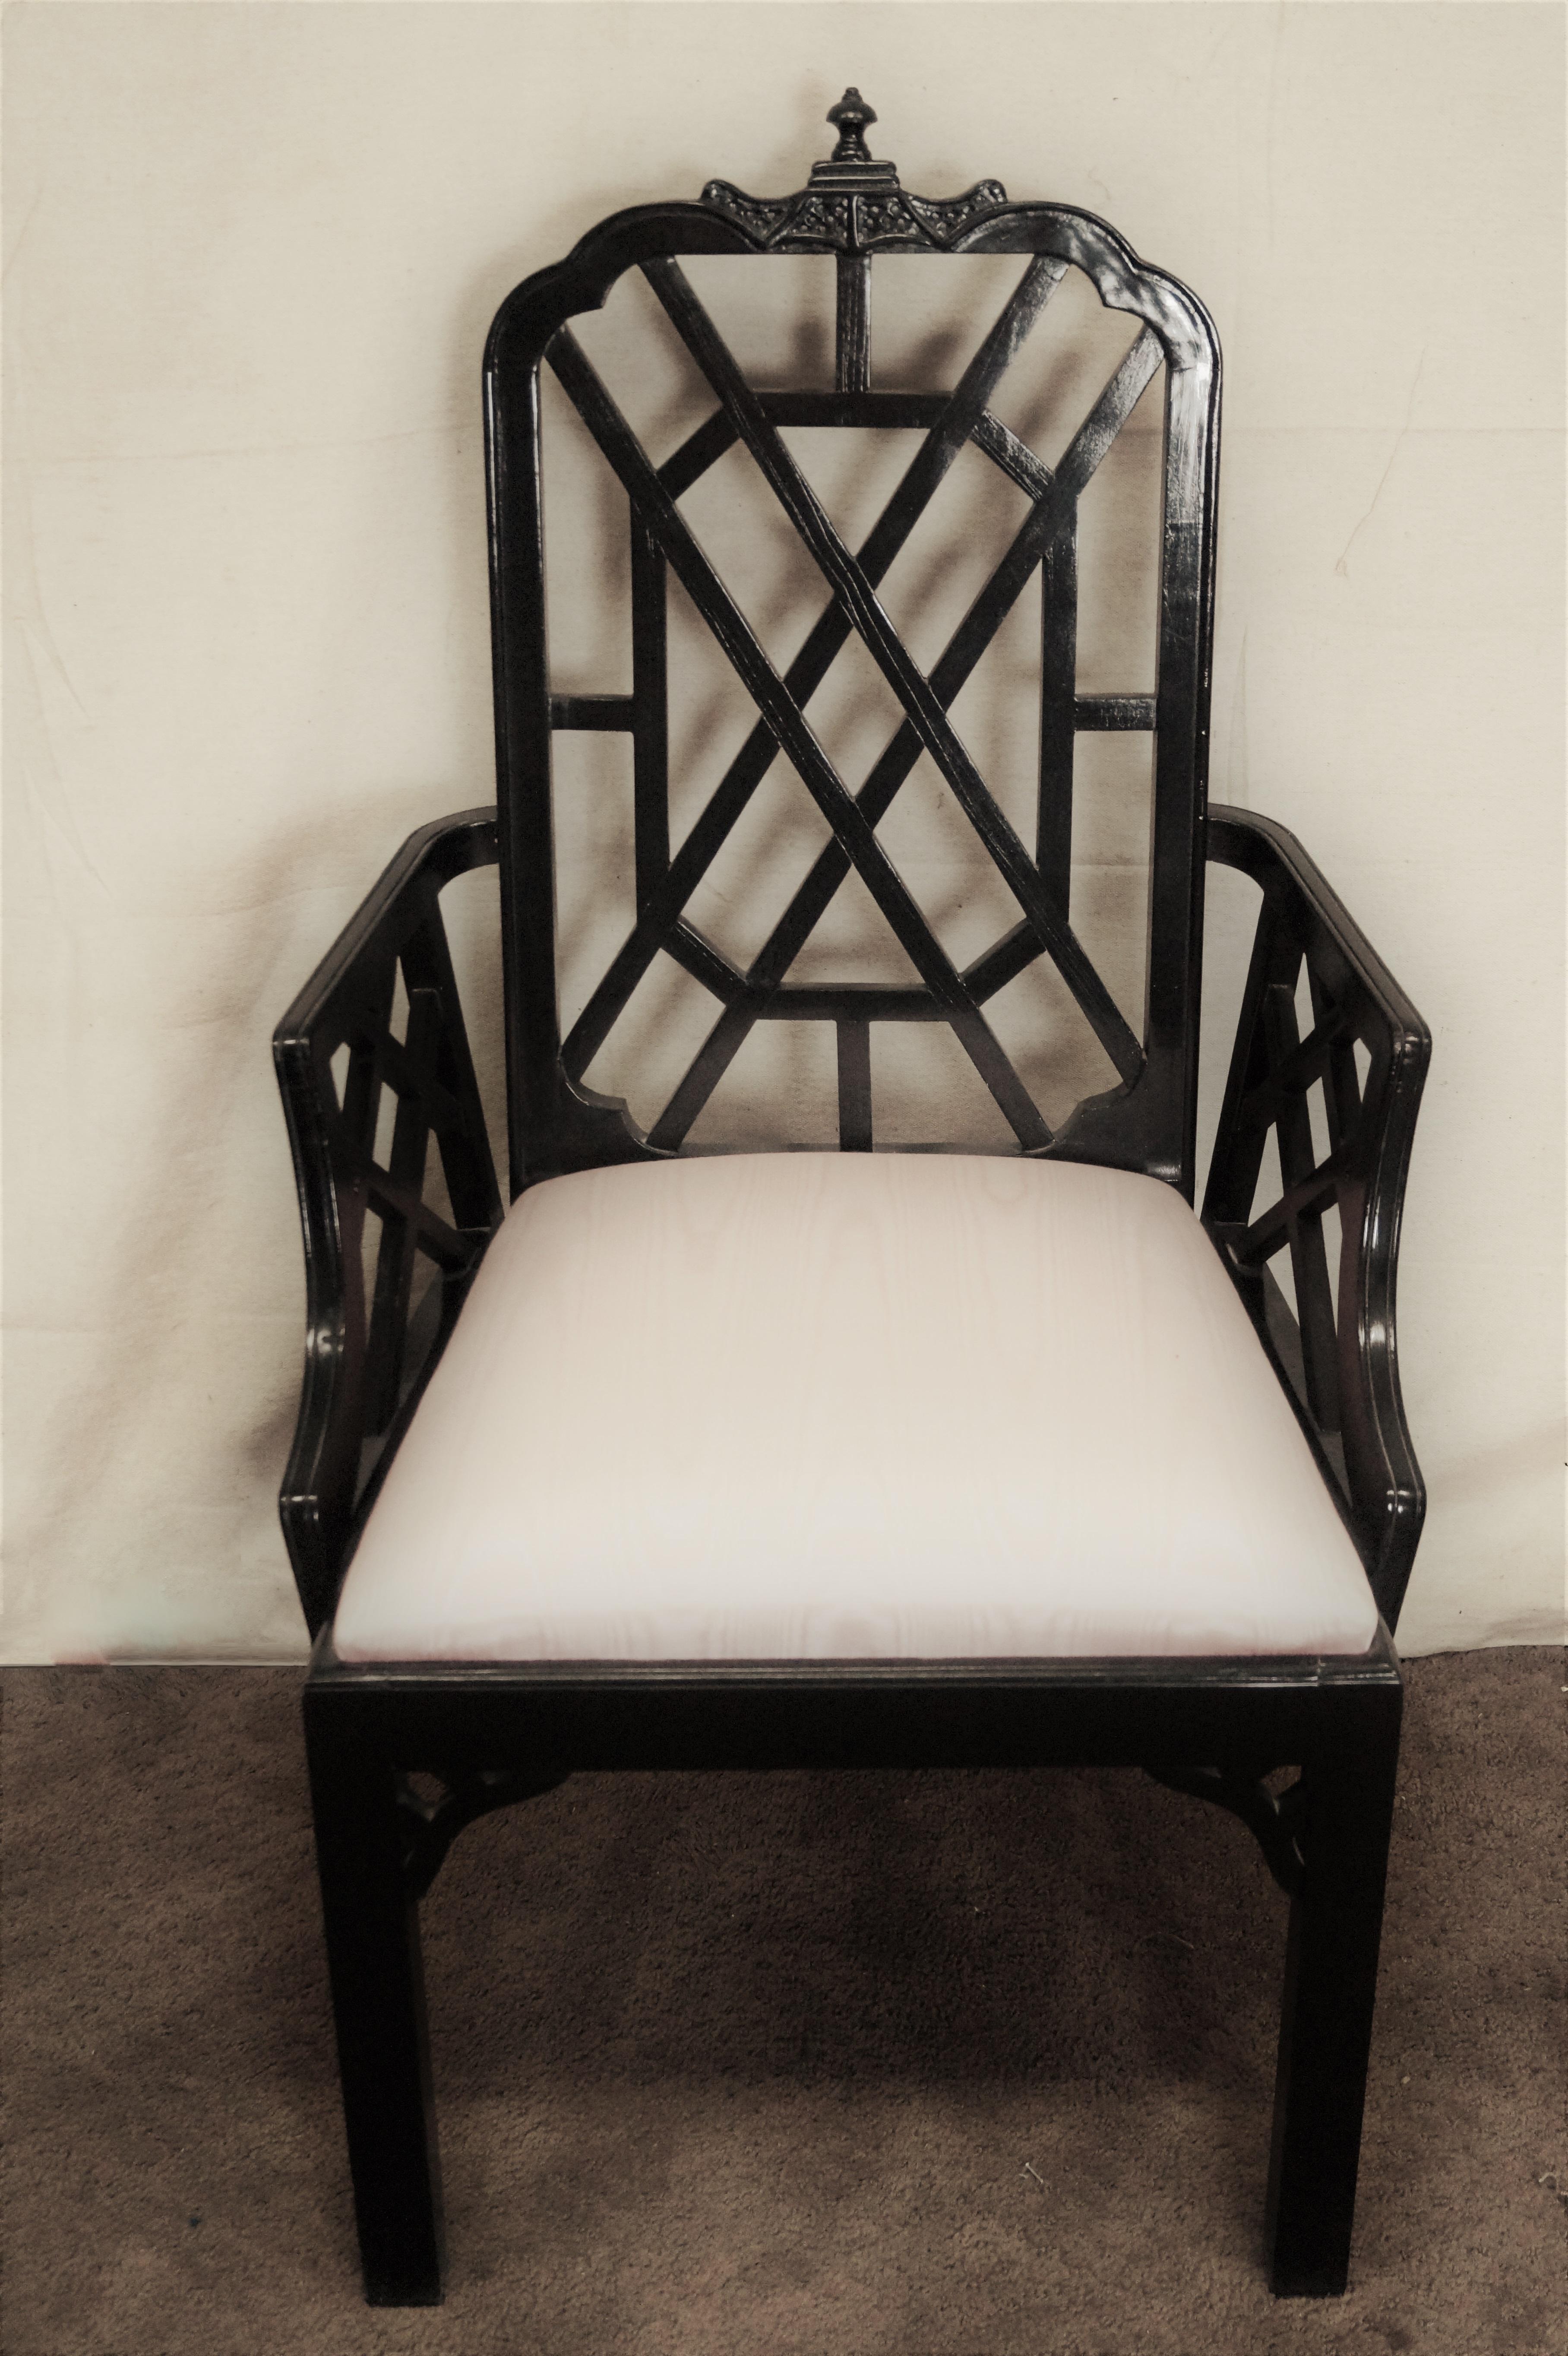 Satz von sechs klassischen, von der Chinoiserie inspirierten Esszimmerstühlen. Das Set besteht aus 2 Armlehnen und 4 Beistellstühlen mit einem Pagodendetail an der oberen Schiene und eleganten Laubsägearbeiten an den Rückenlehnen mit Armlehnen, die